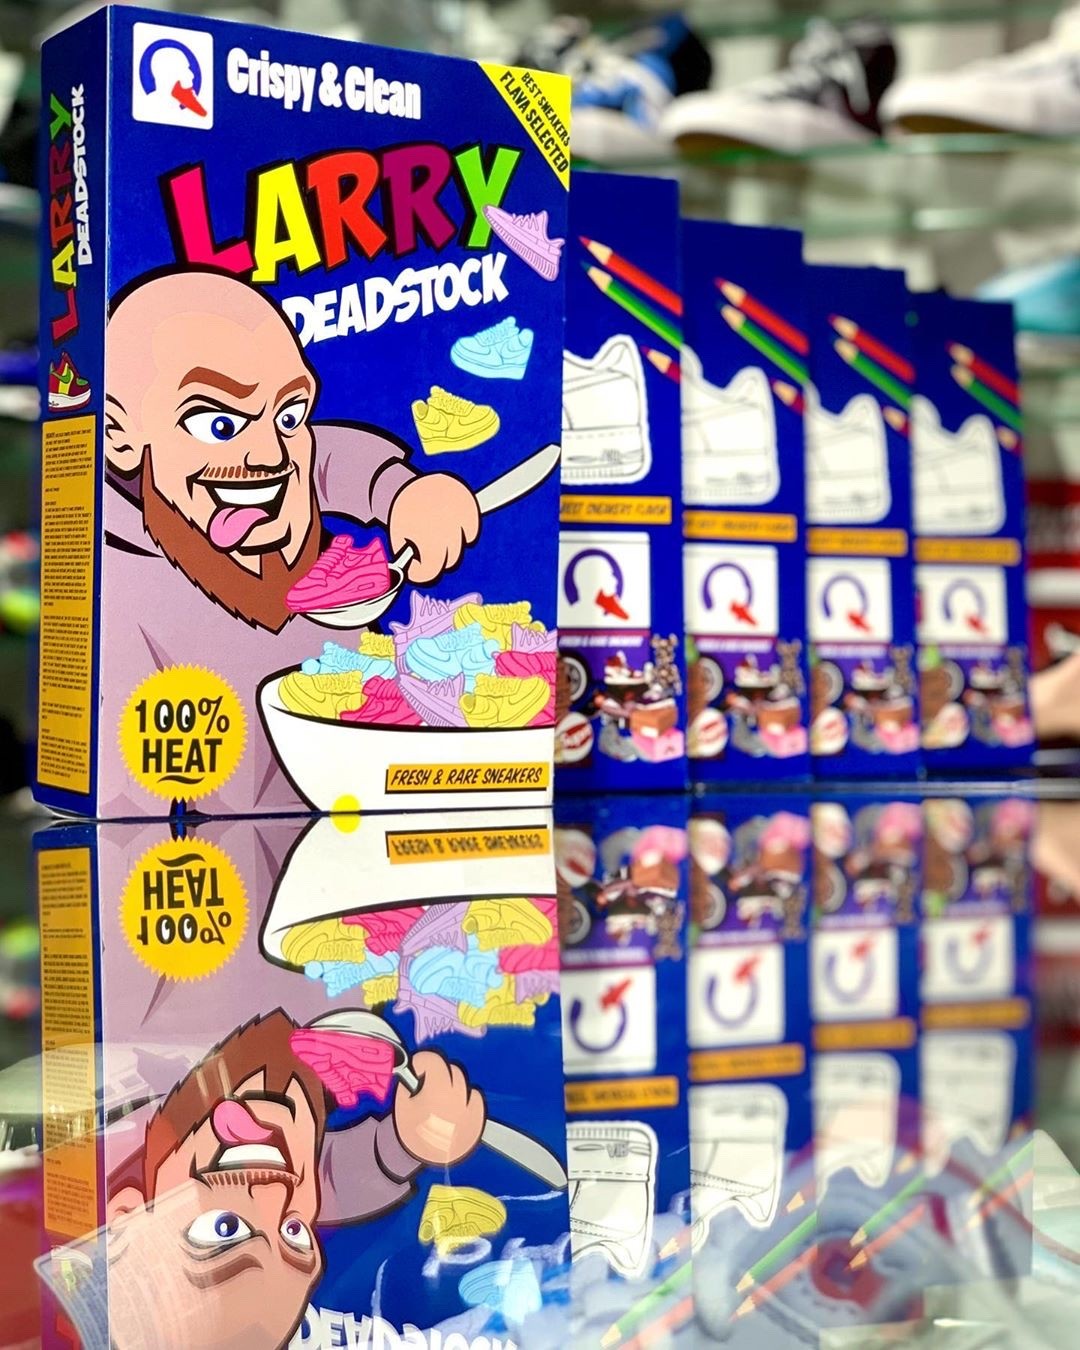 Les céréales Larry Deadstock : crispy & clean !